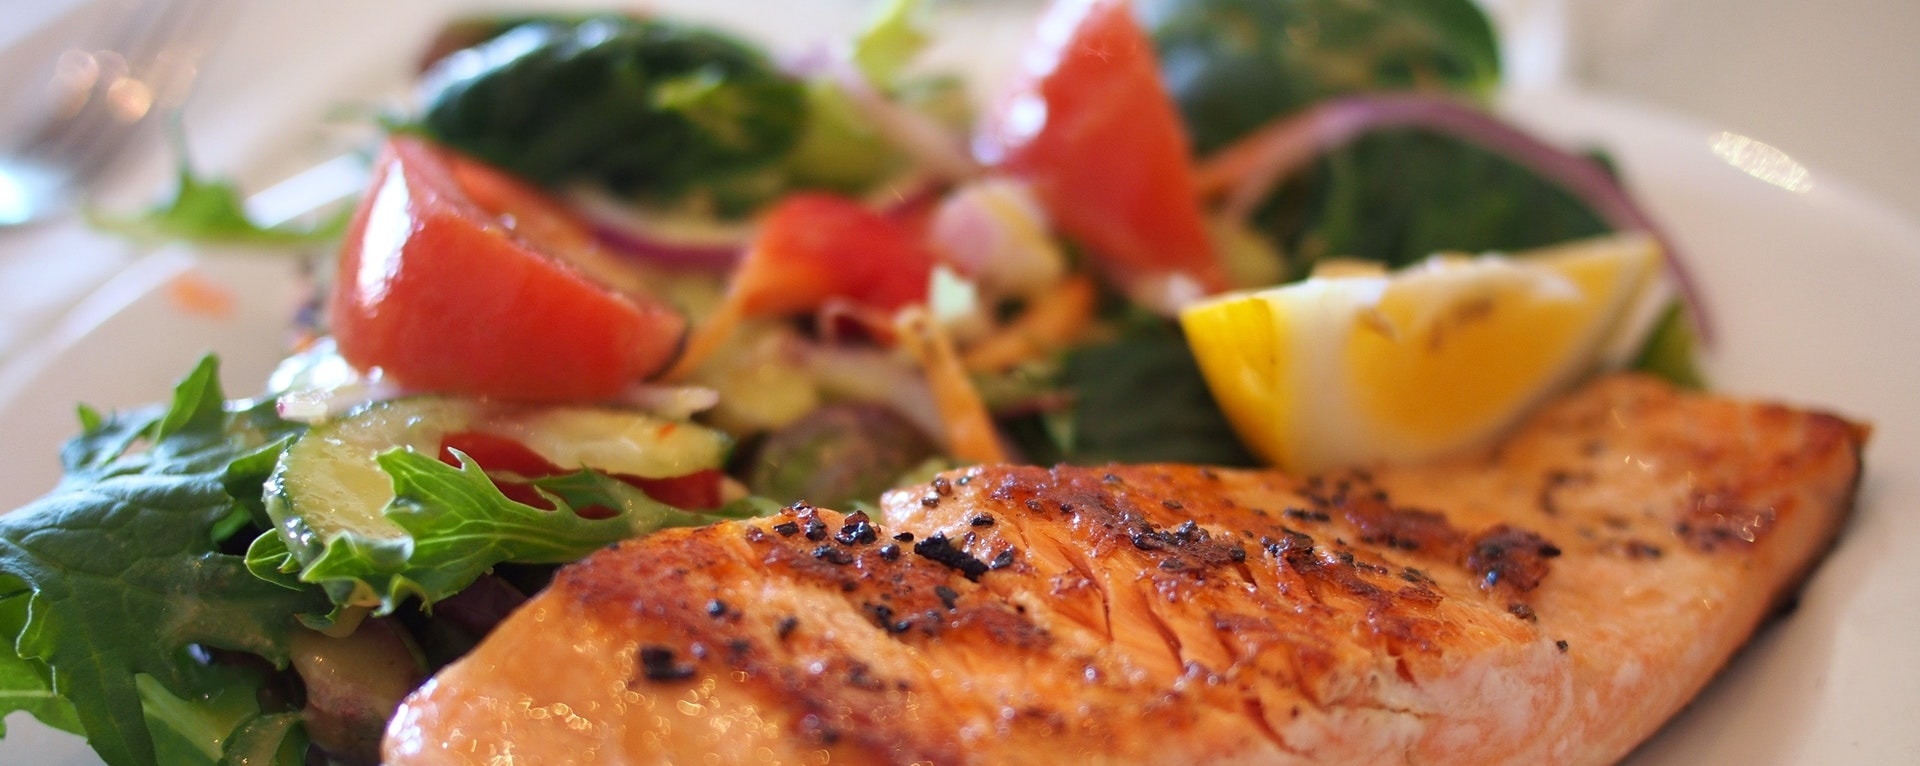 salmon-dish-food-meal